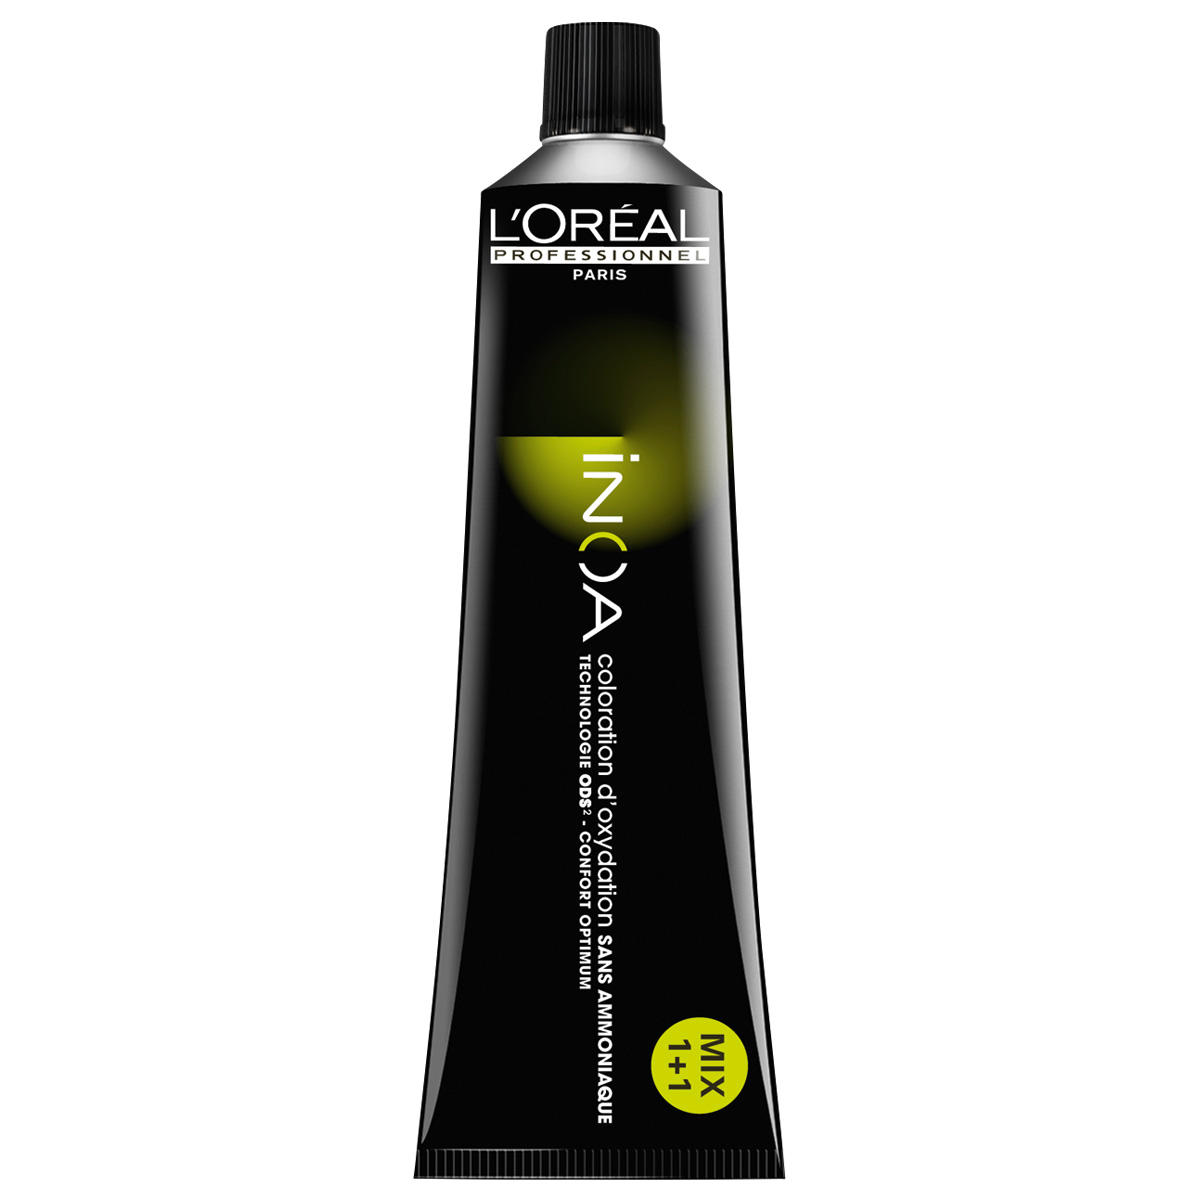 L'Oréal Professionnel Paris Coloration 7.4 Medium blond koper, tube 60 ml